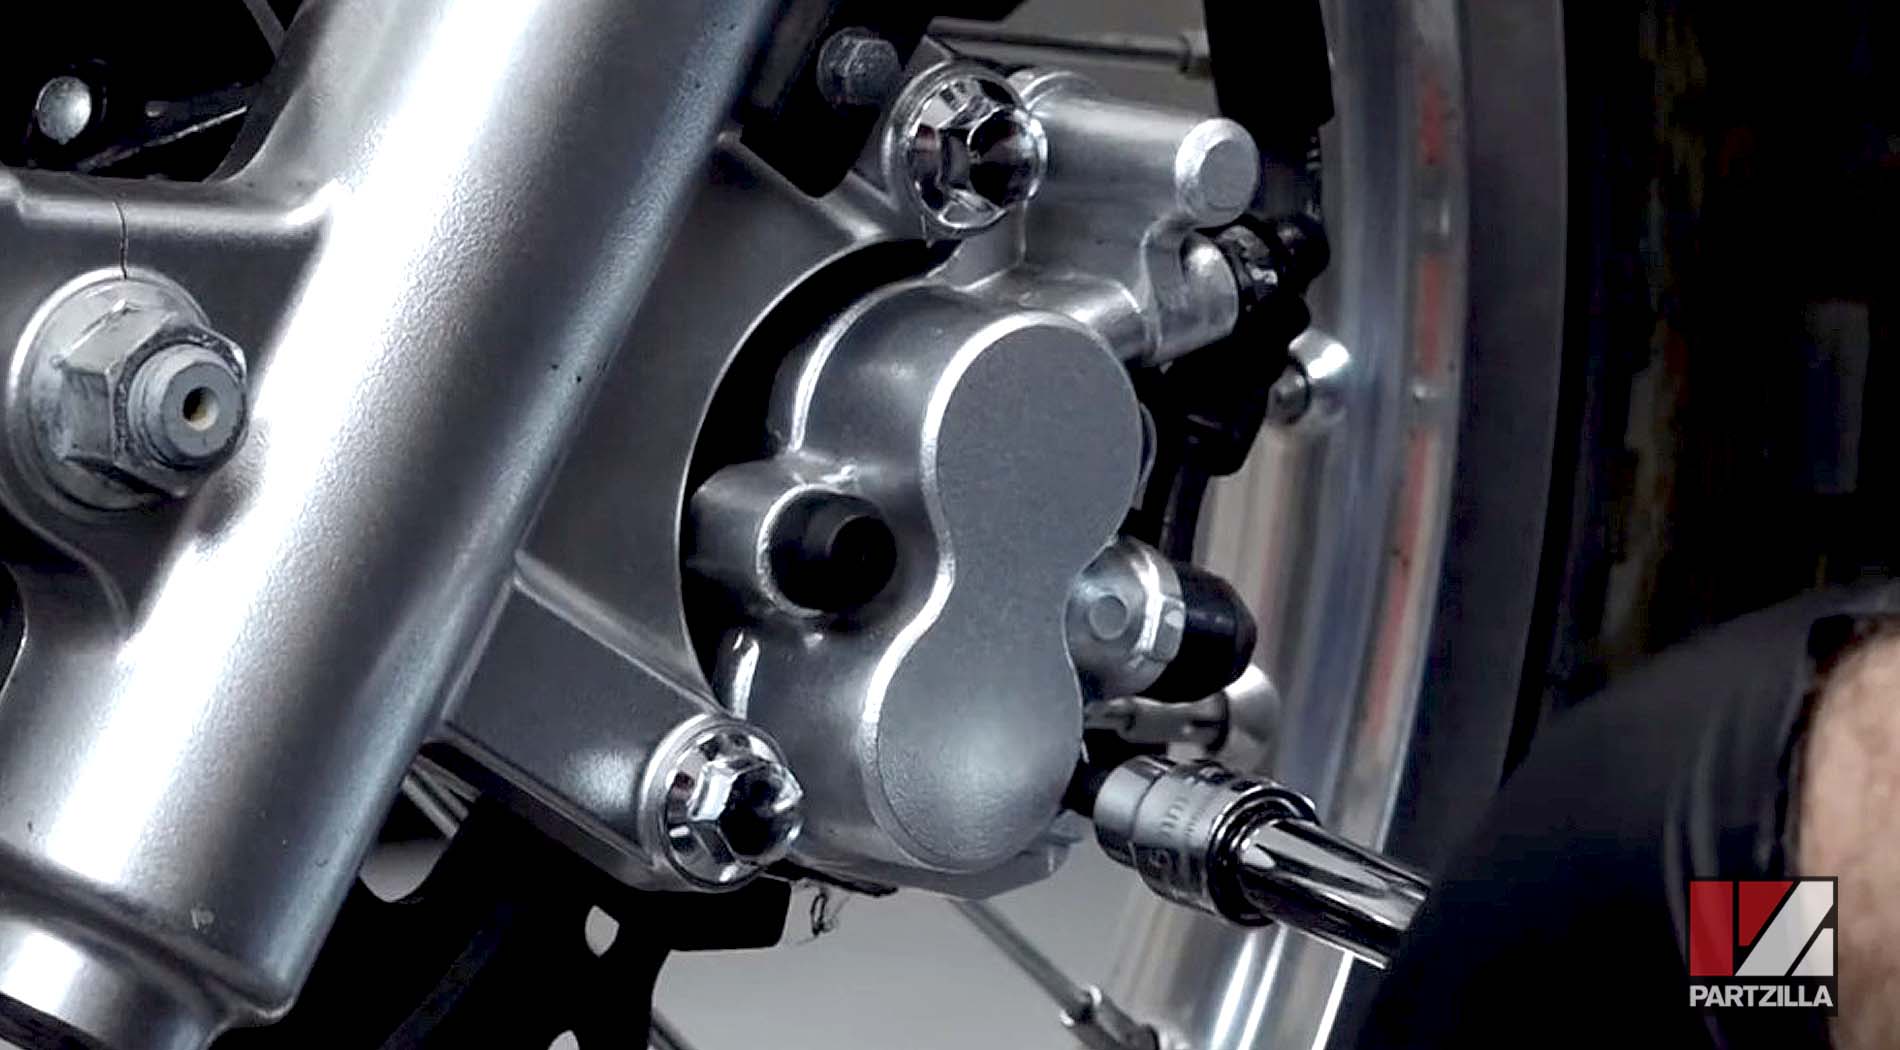 Kawasaki KLR650 dual sport motorcycle front brake pads change